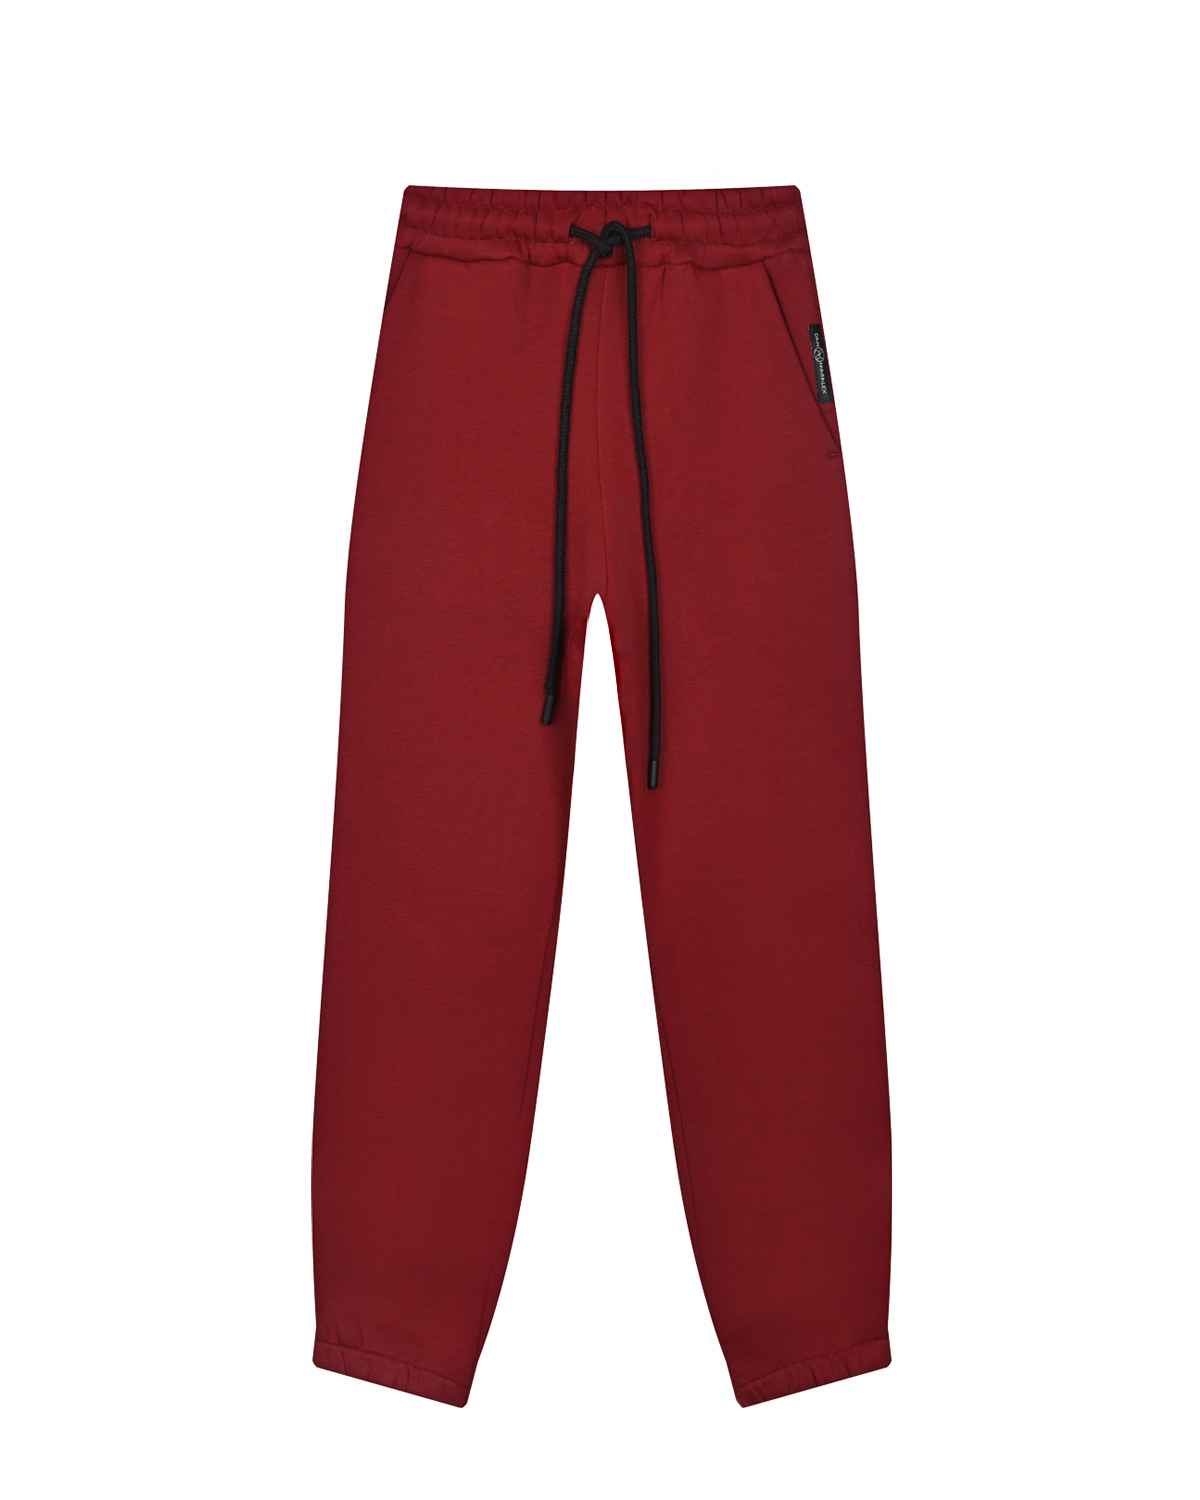 Бордовые спортивные брюки Dan Maralex детские, размер 164, цвет бордовый